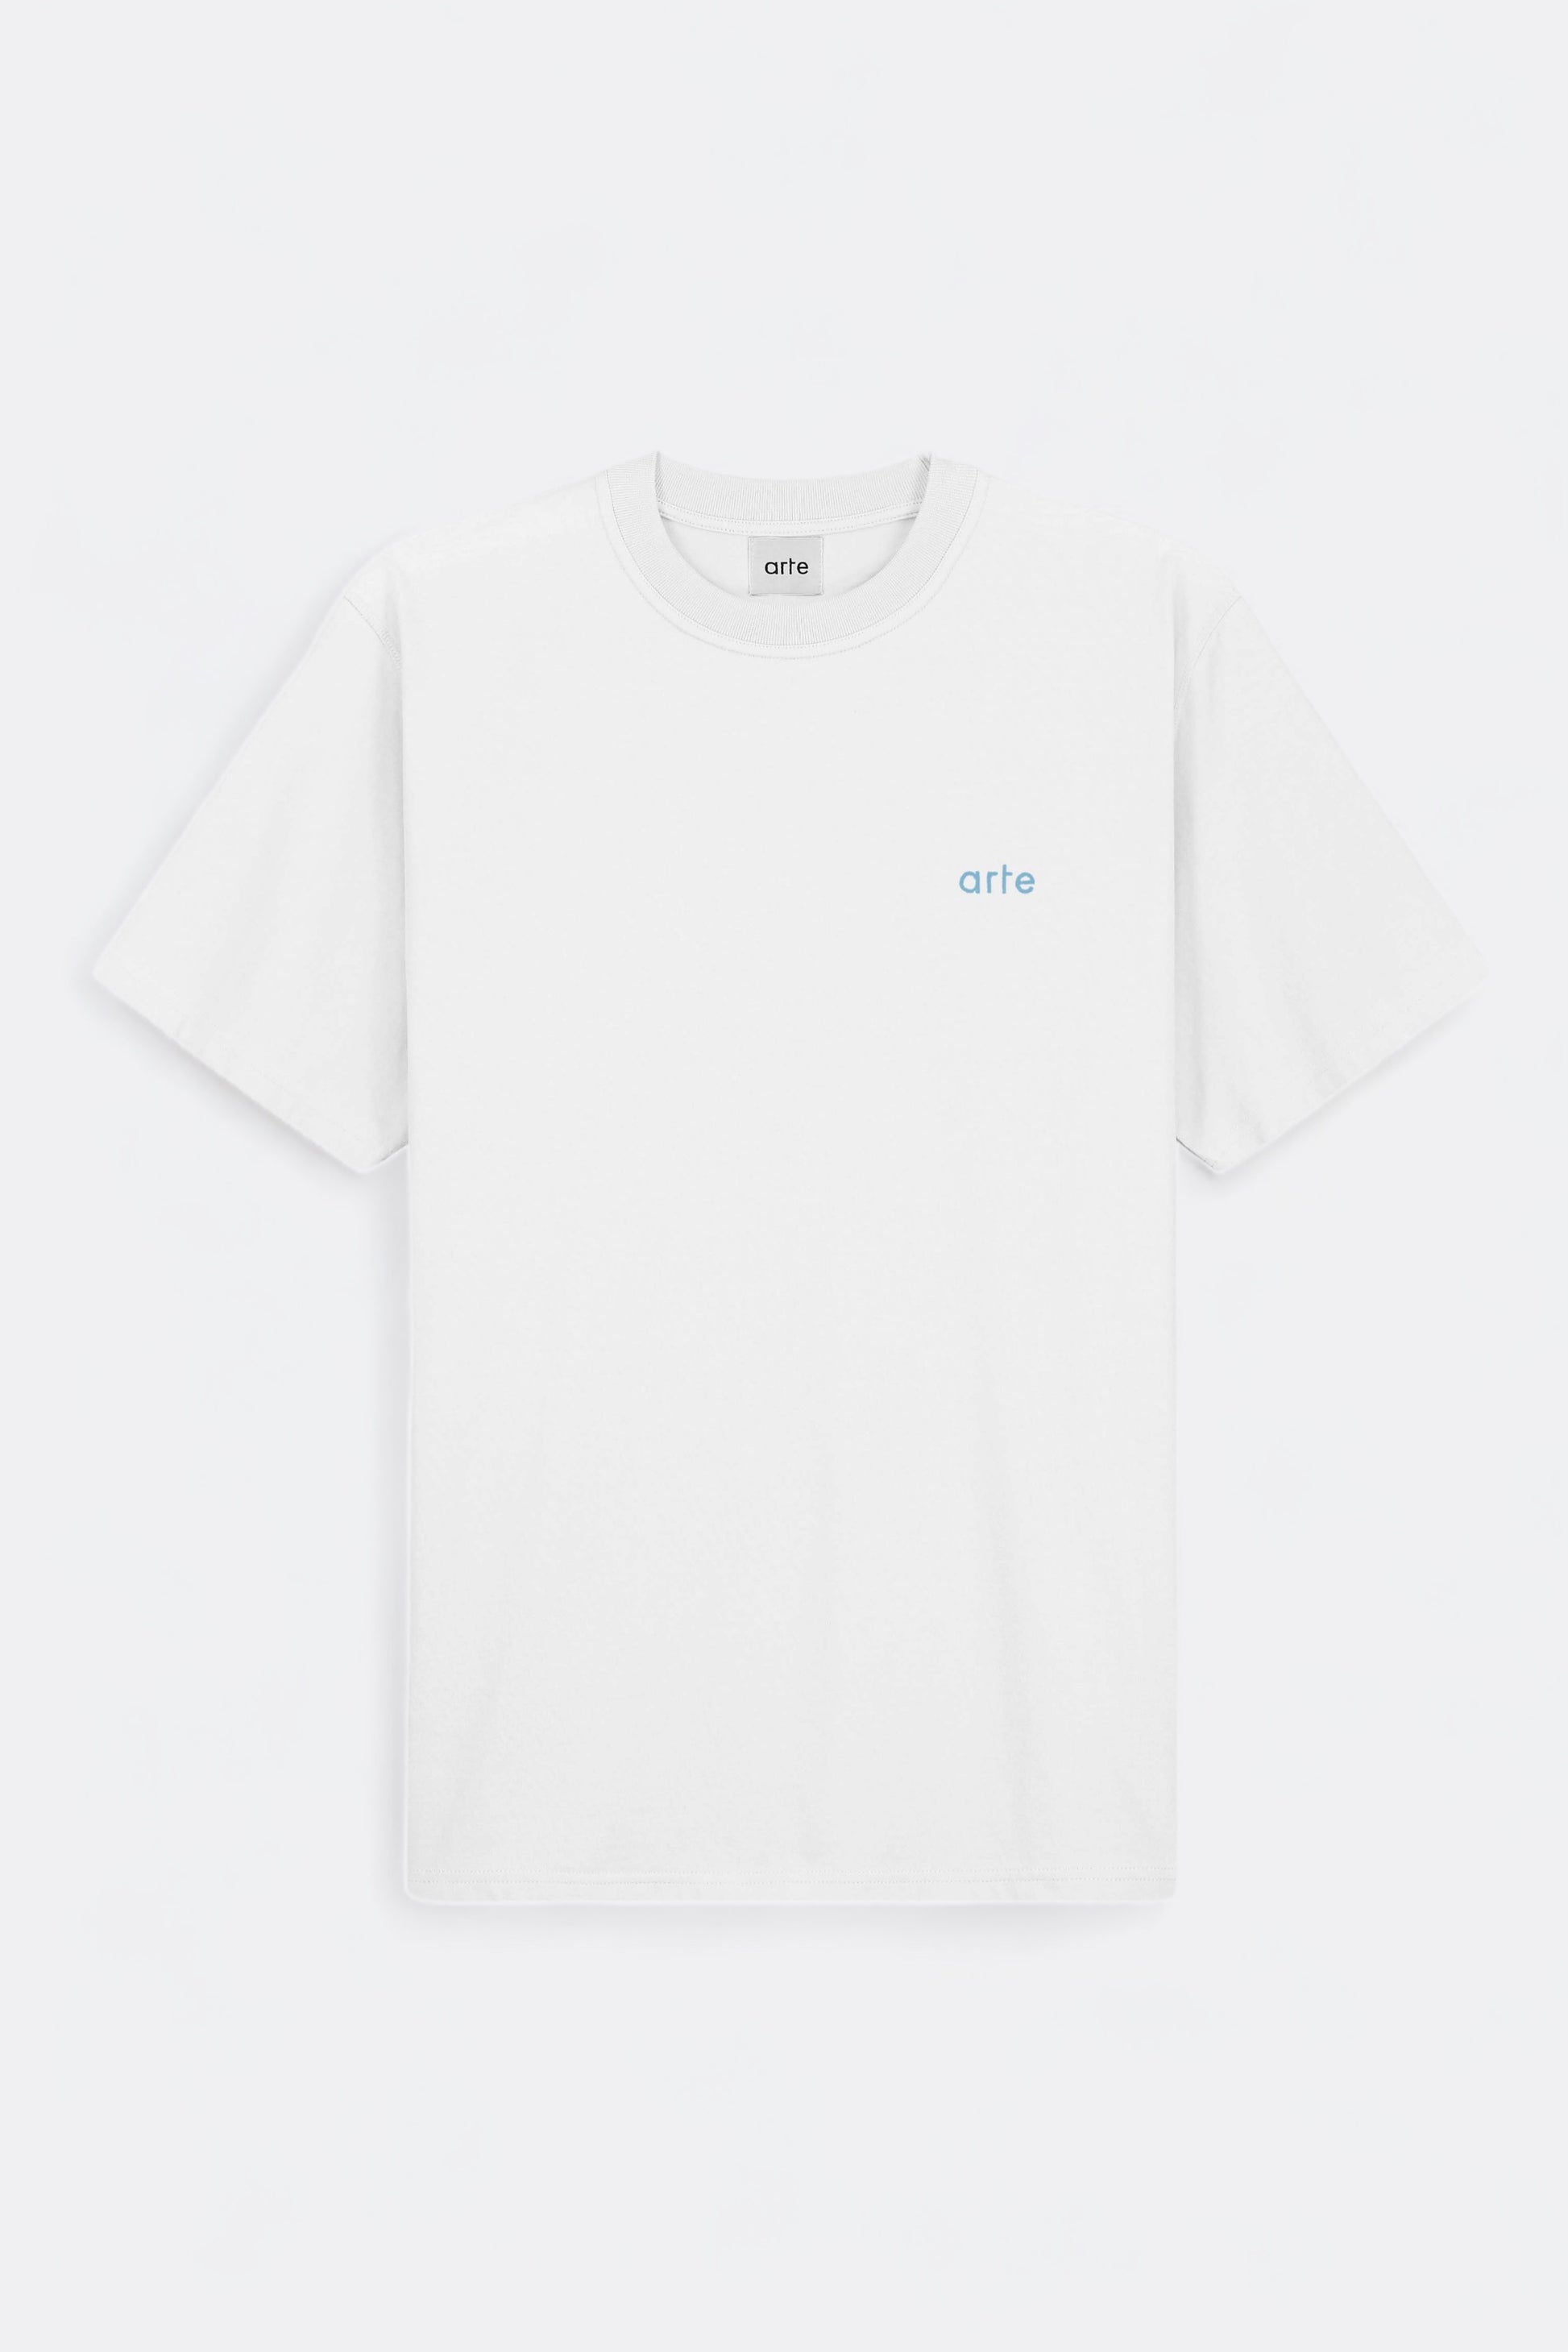 Arte - Teo Back Multi Runner T-shirt (White)